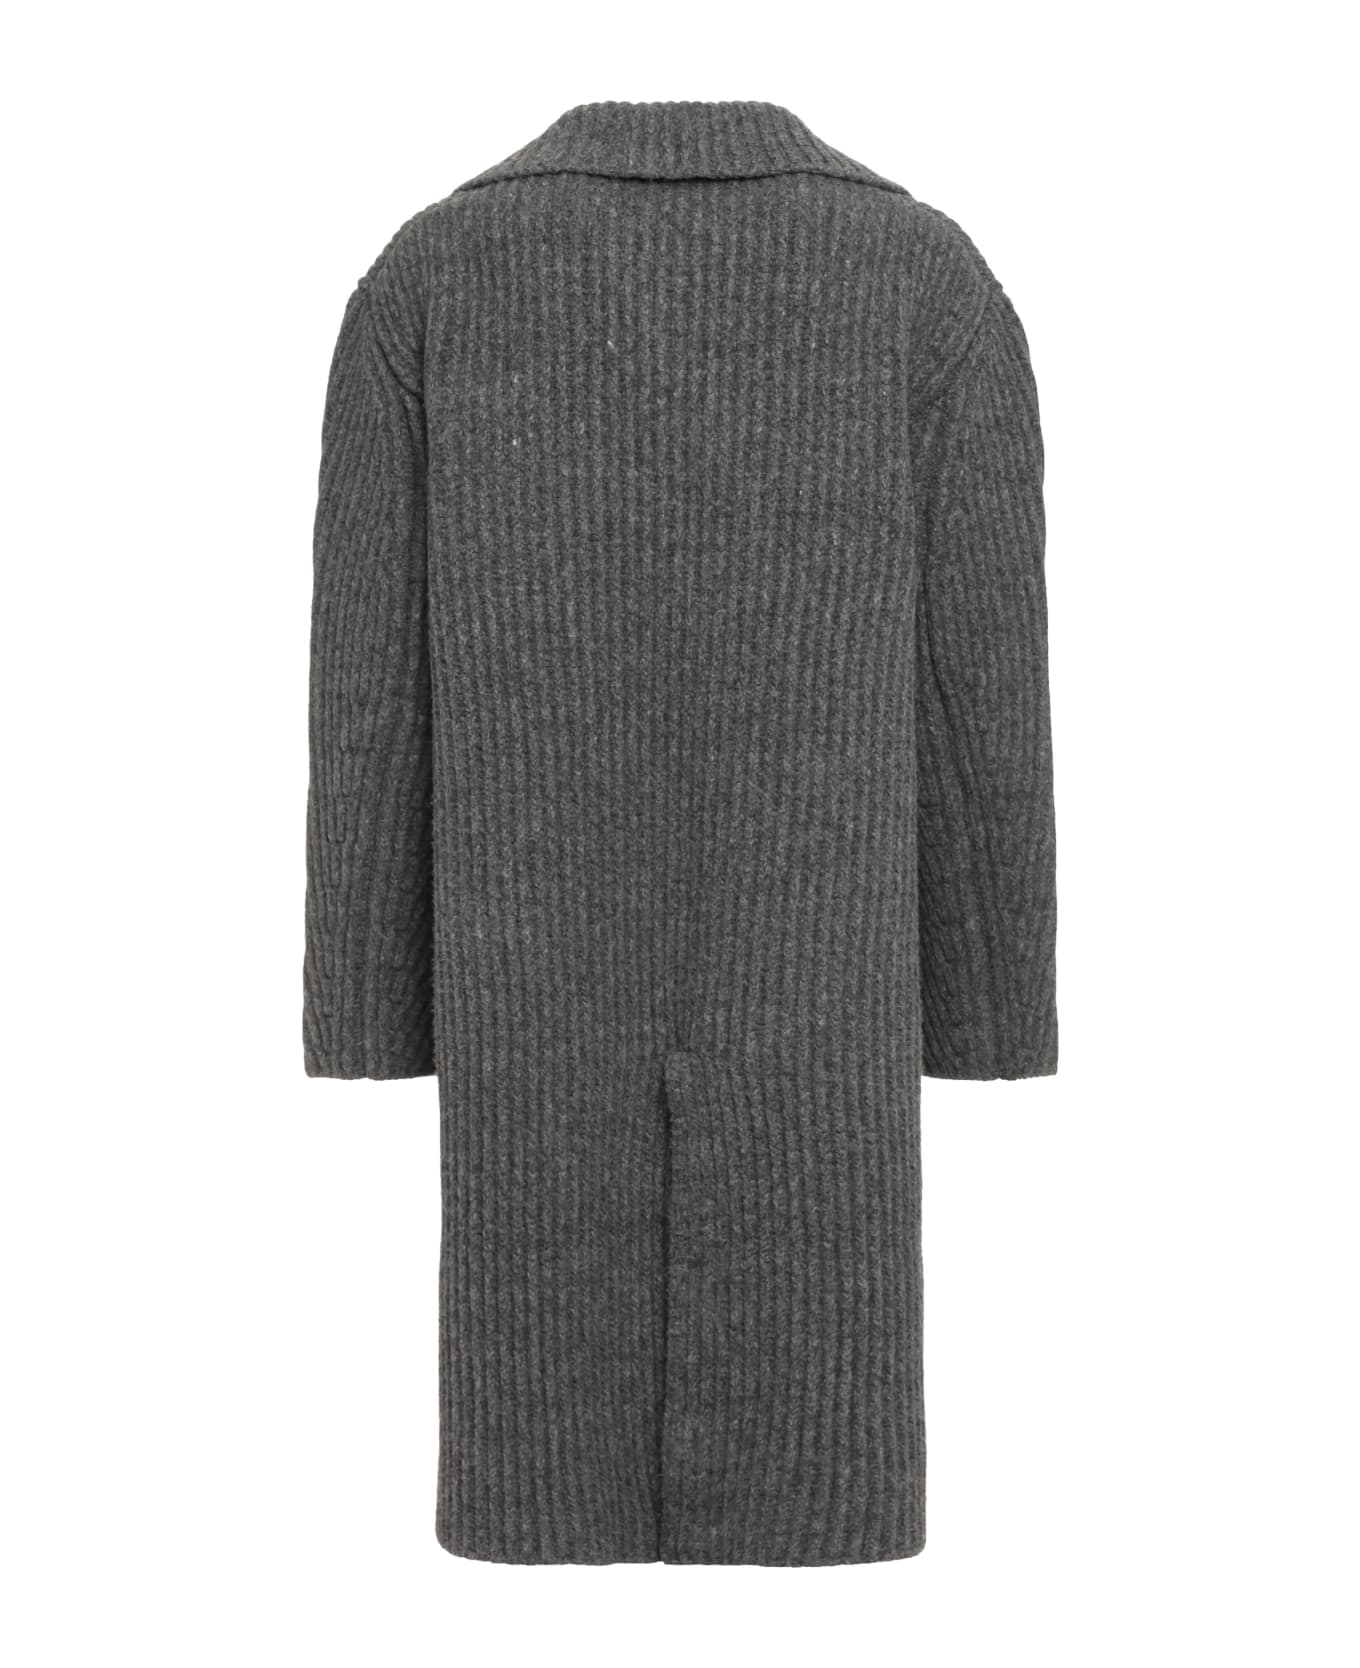 Bottega Veneta Wool Jersey Coat - grey